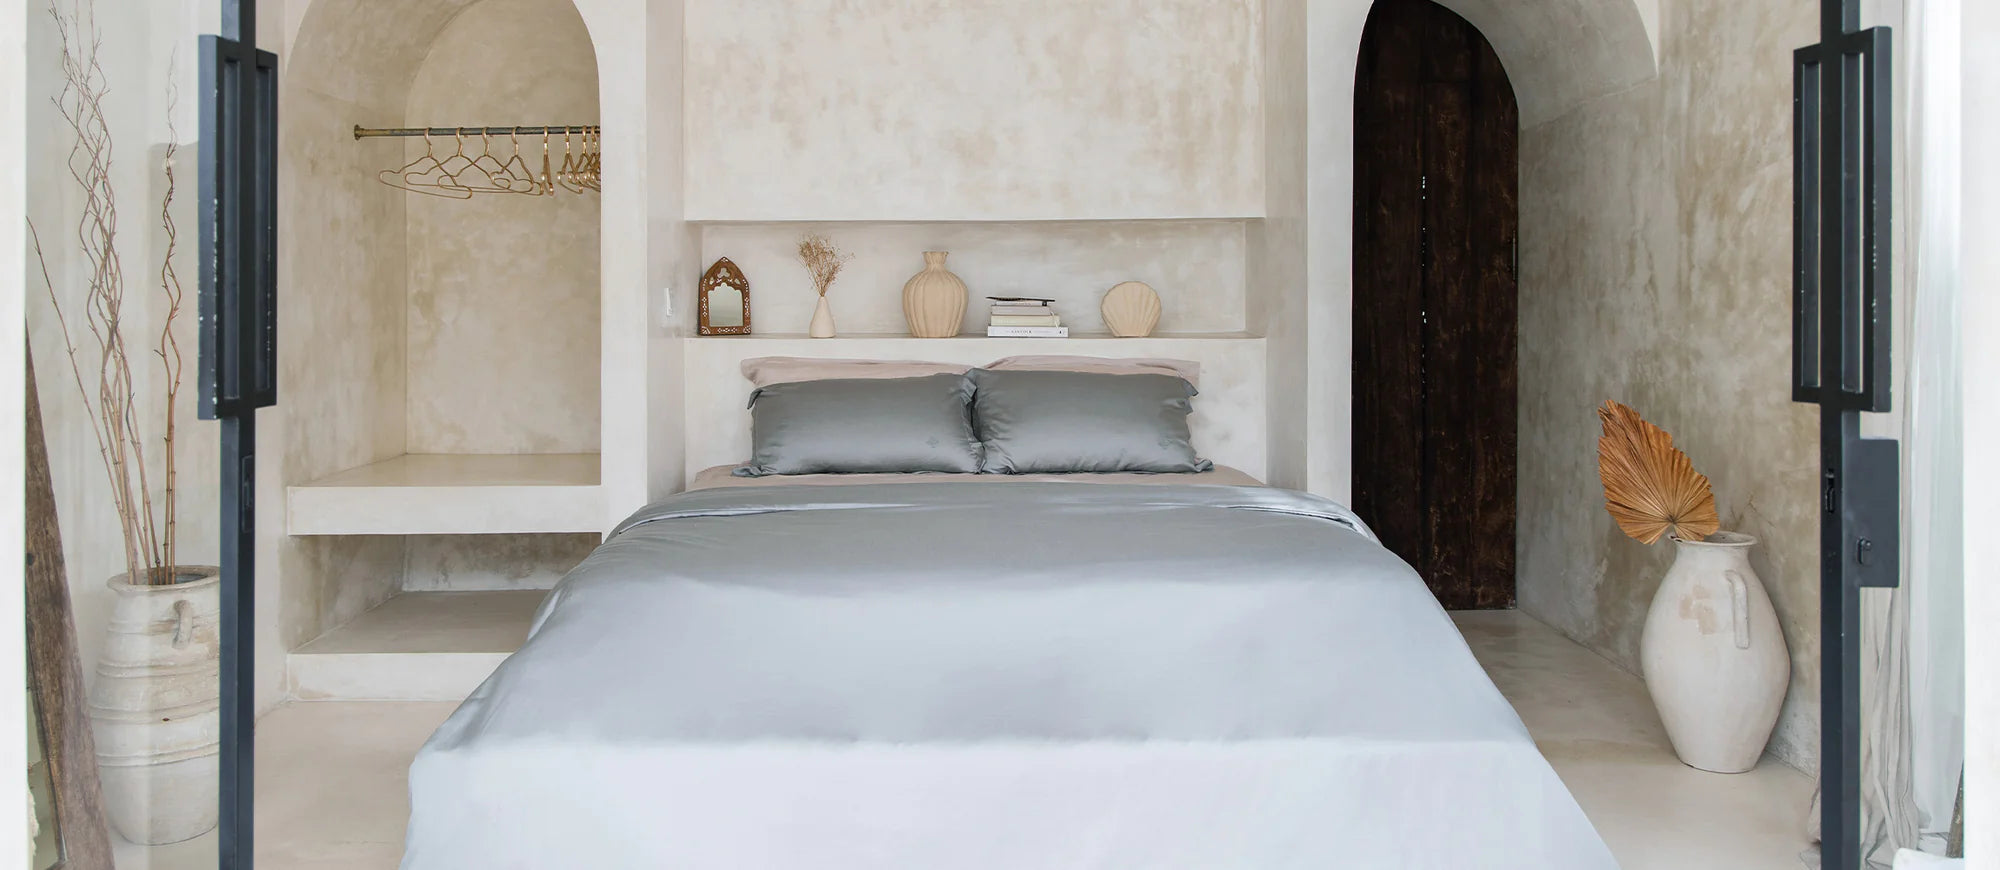 9 個步驟讓您輕鬆塑造酒店風格床褥